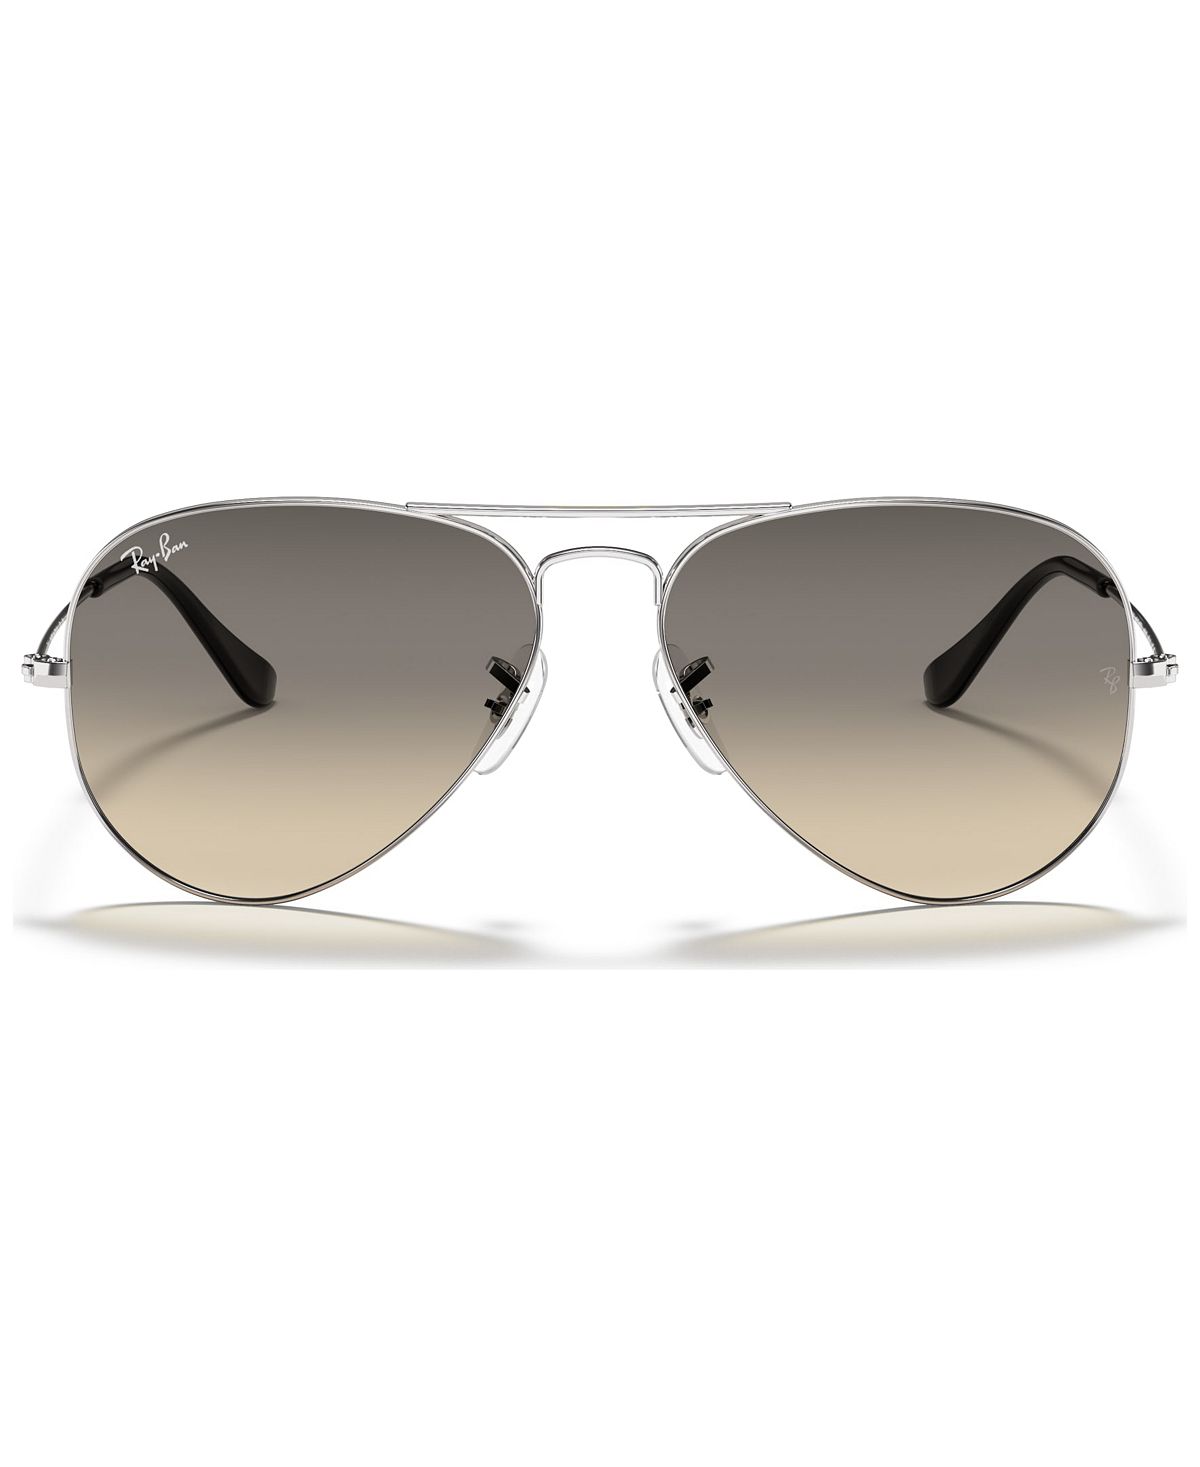 Солнцезащитные очки, rb3025 aviator gradient Ray-Ban, мульти